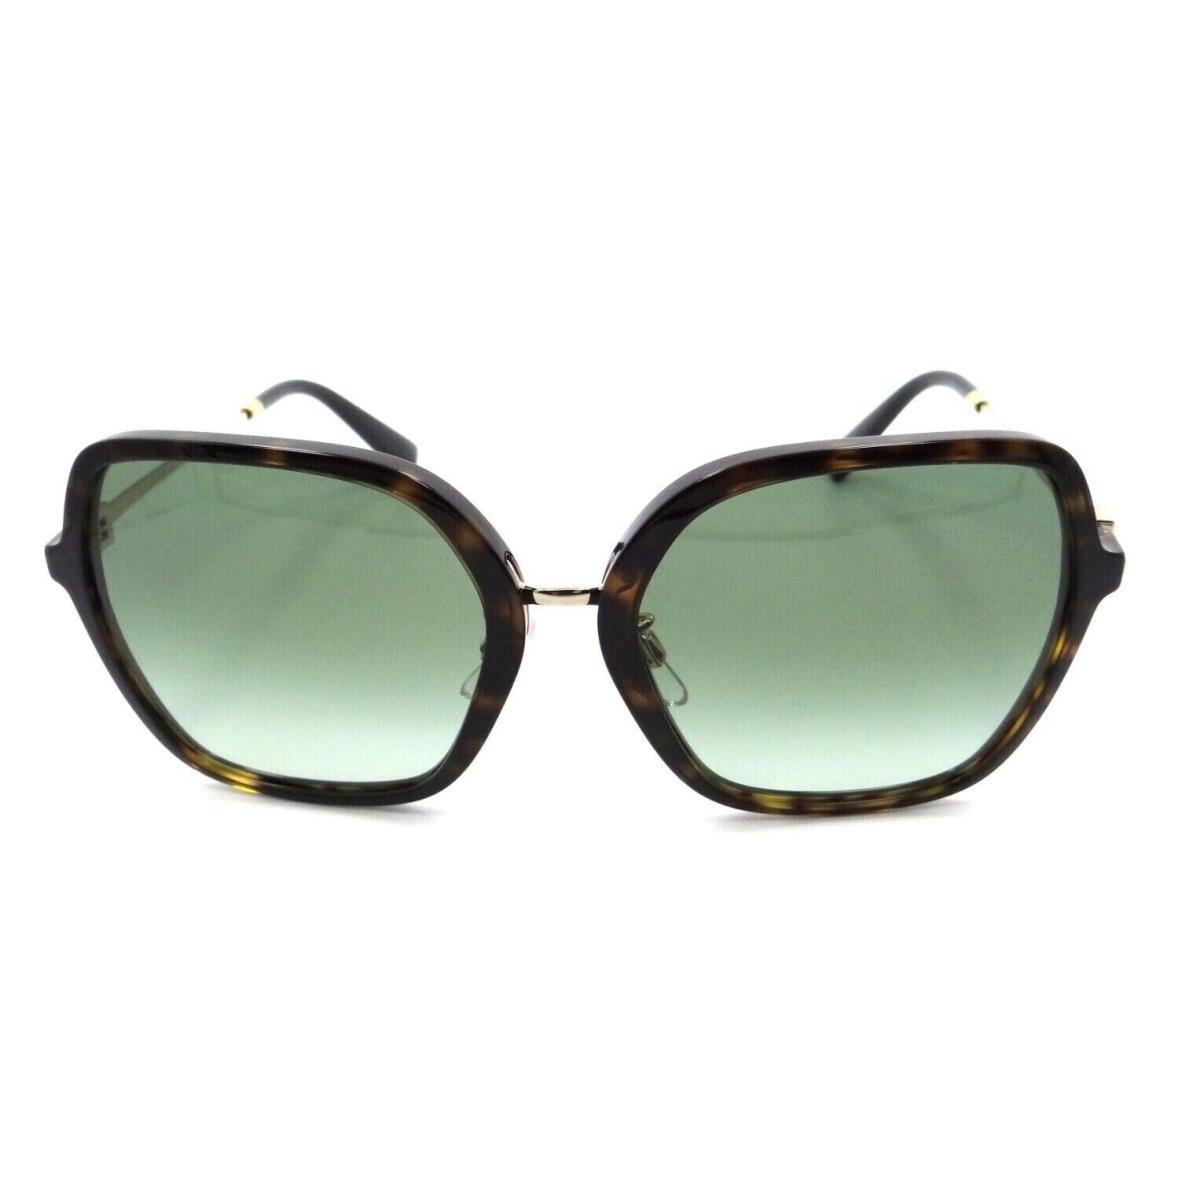 Valentino sunglasses  - Multicolor Frame